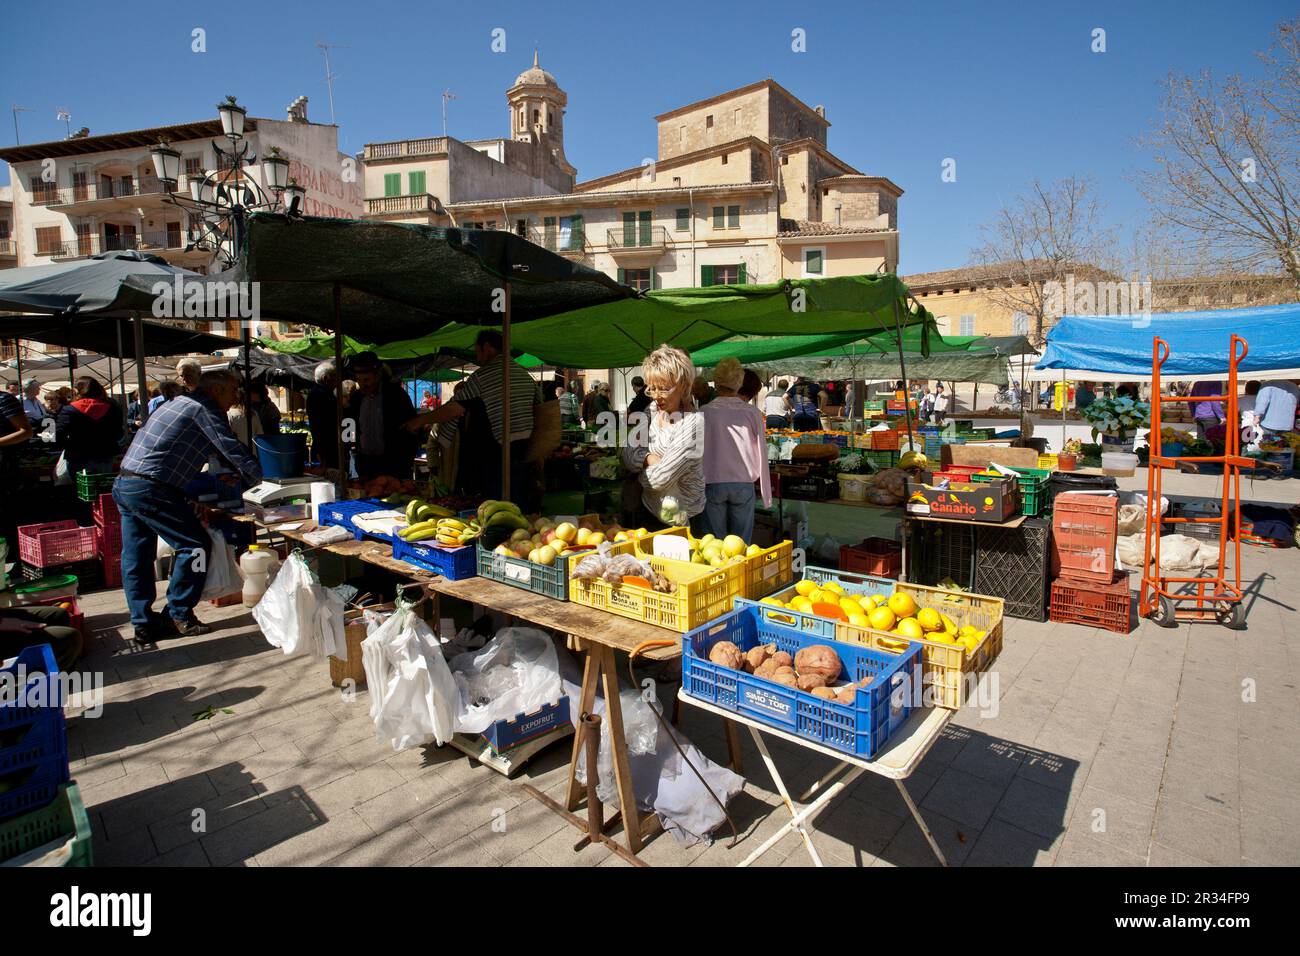 Mercado semanal al aire libre. llucmajor.Mallorca.Islas Baleares. Spain. Stock Photo